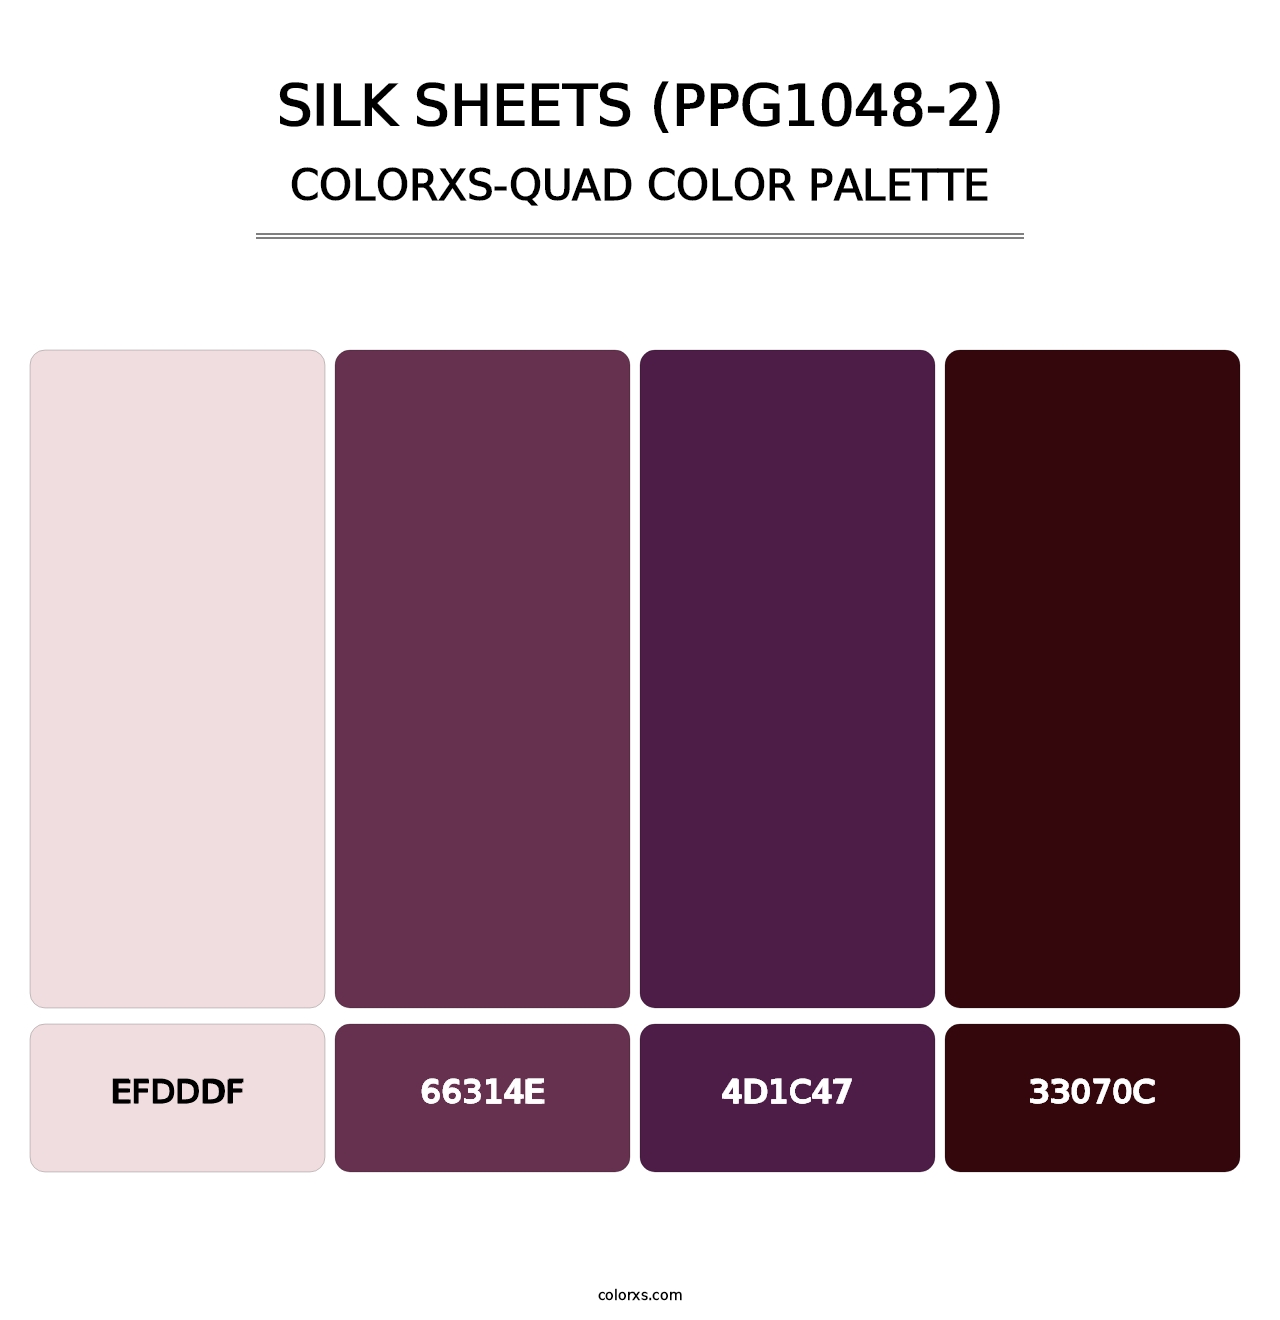 Silk Sheets (PPG1048-2) - Colorxs Quad Palette